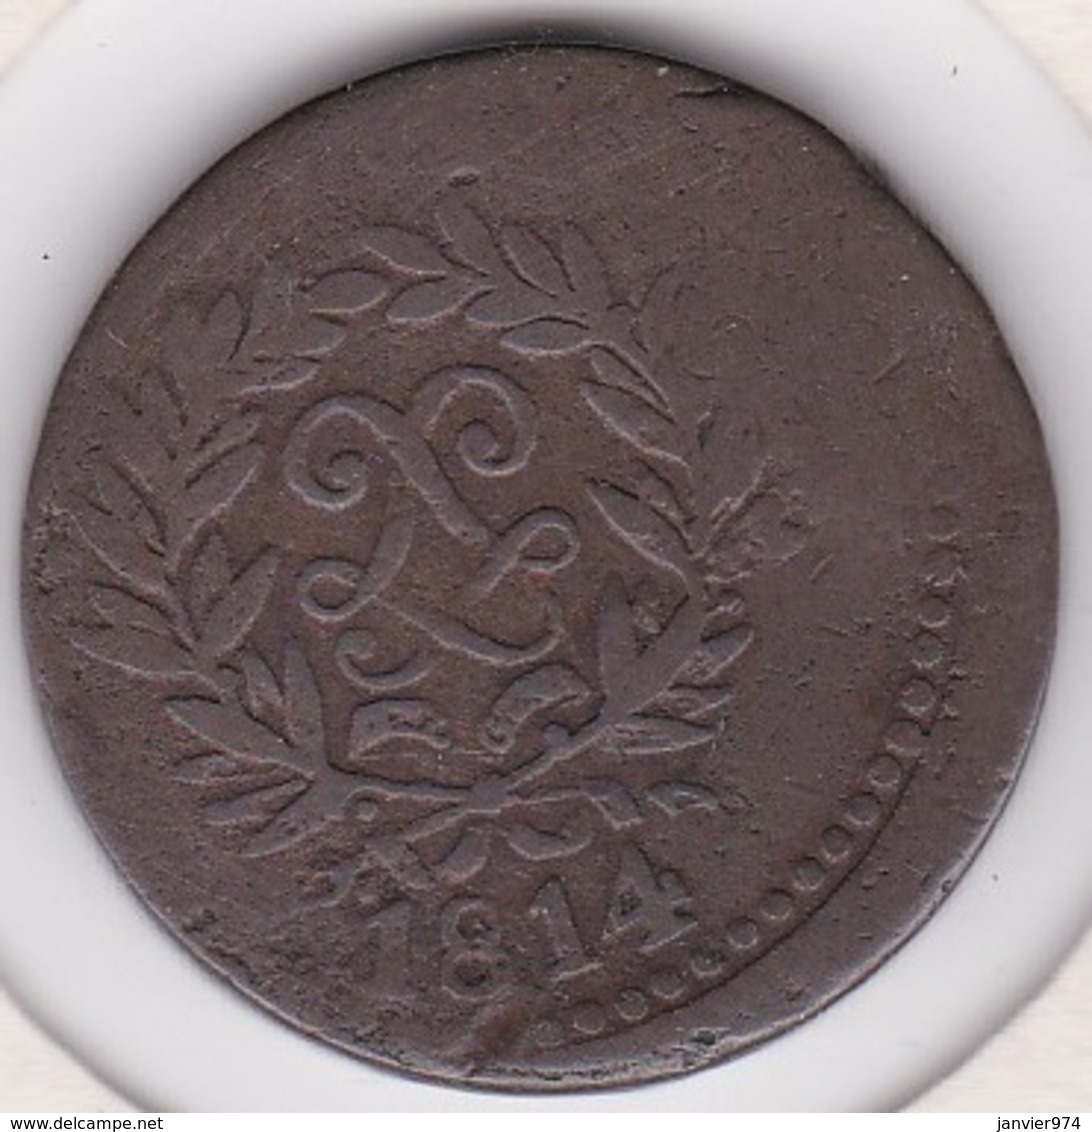 SIEGE D’ANVERS. 5 CENTIMES 1814. Louis XVIII, Frappe Médaille, RARE - 1814 Siège D’Anvers